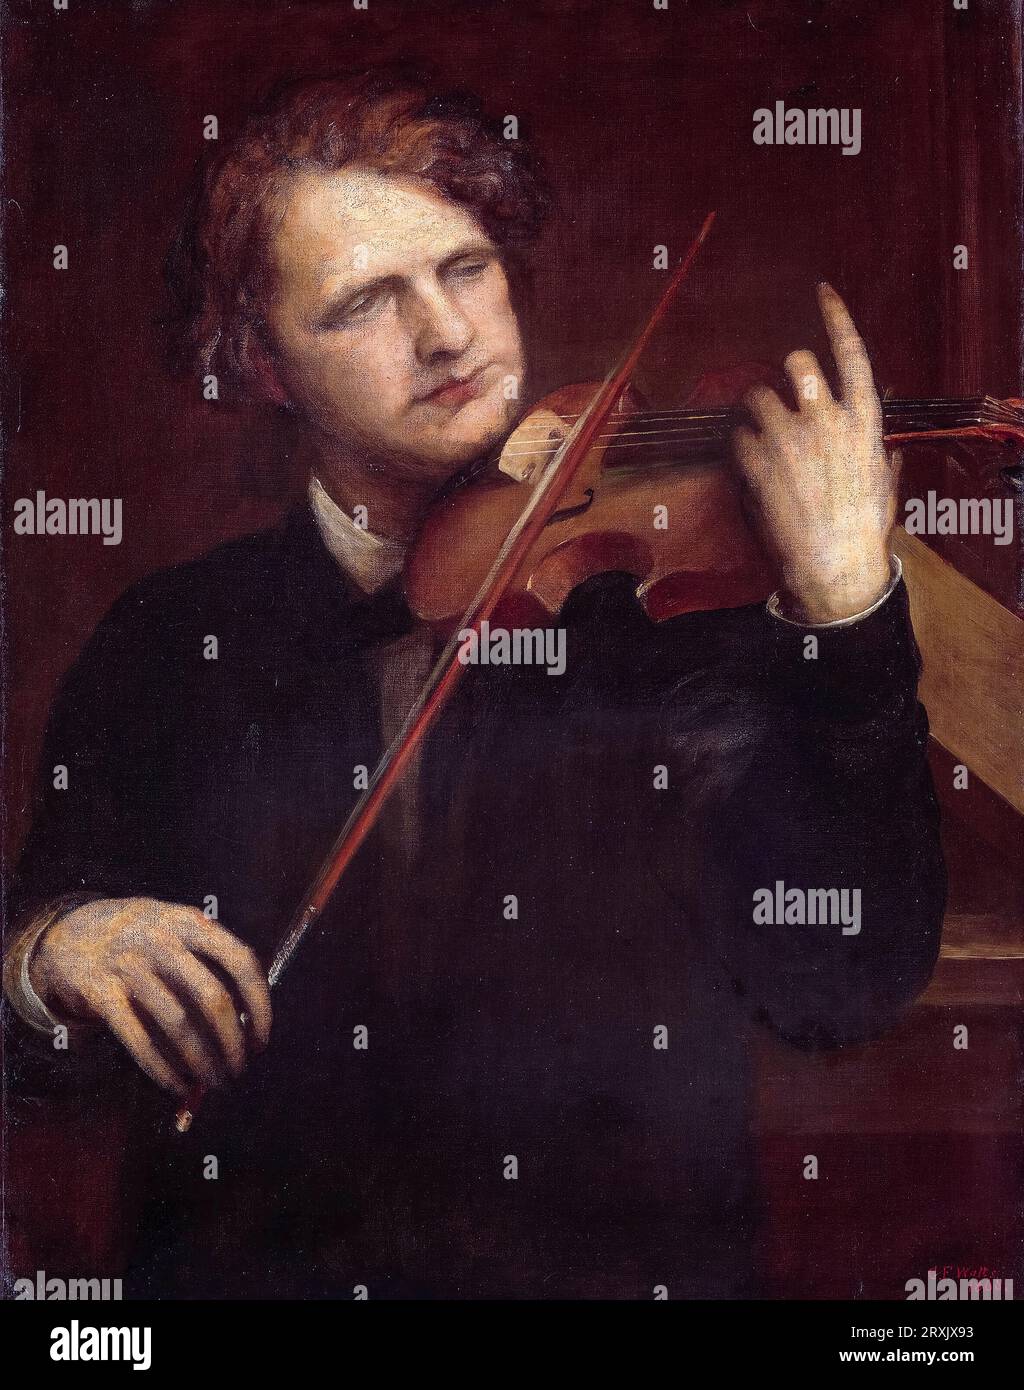 A Lamplight Study : Herr Joachim (Joseph Joachim, 1831-1907, violoniste hongrois, chef d'orchestre et compositeur), portrait à l'huile sur toile par George Frederic Watts, 1868 Banque D'Images